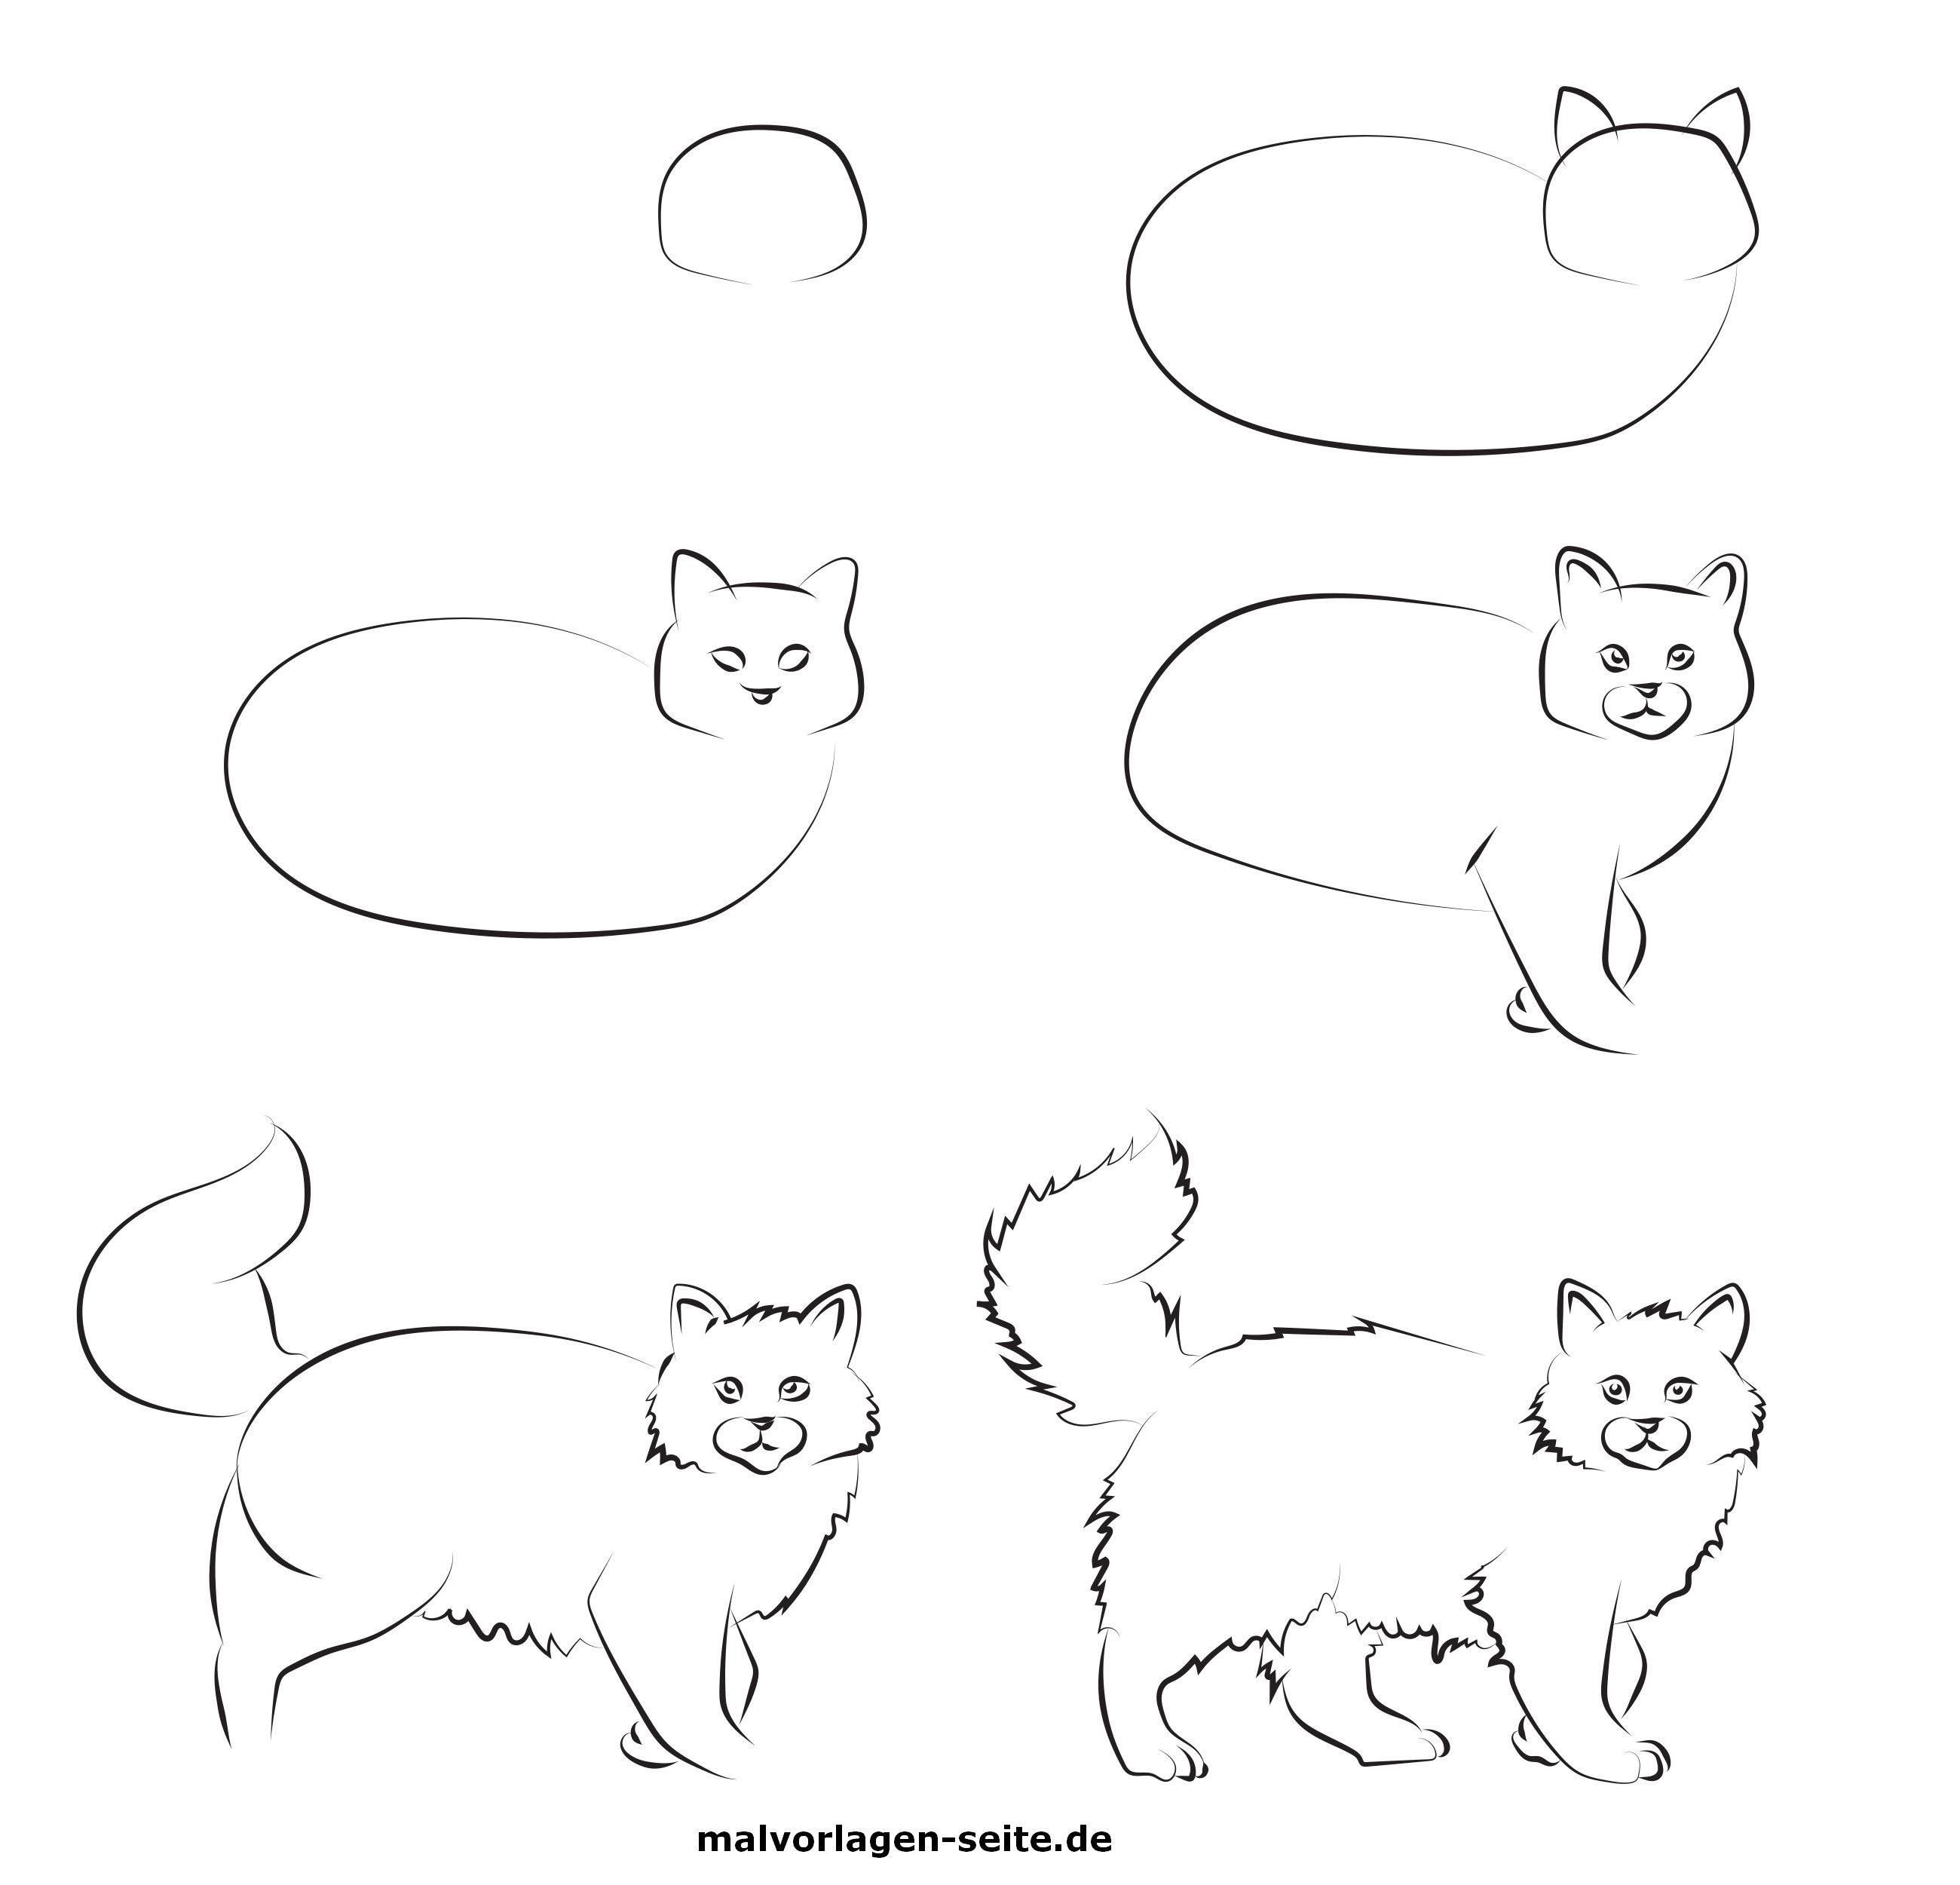 Как нарисовать кота поэтапно для детей. Этапы рисования кошки. Кошка для рисования для детей. Этапы рисования кошки для дошкольников. Поэтапное рисование кошки для детей.